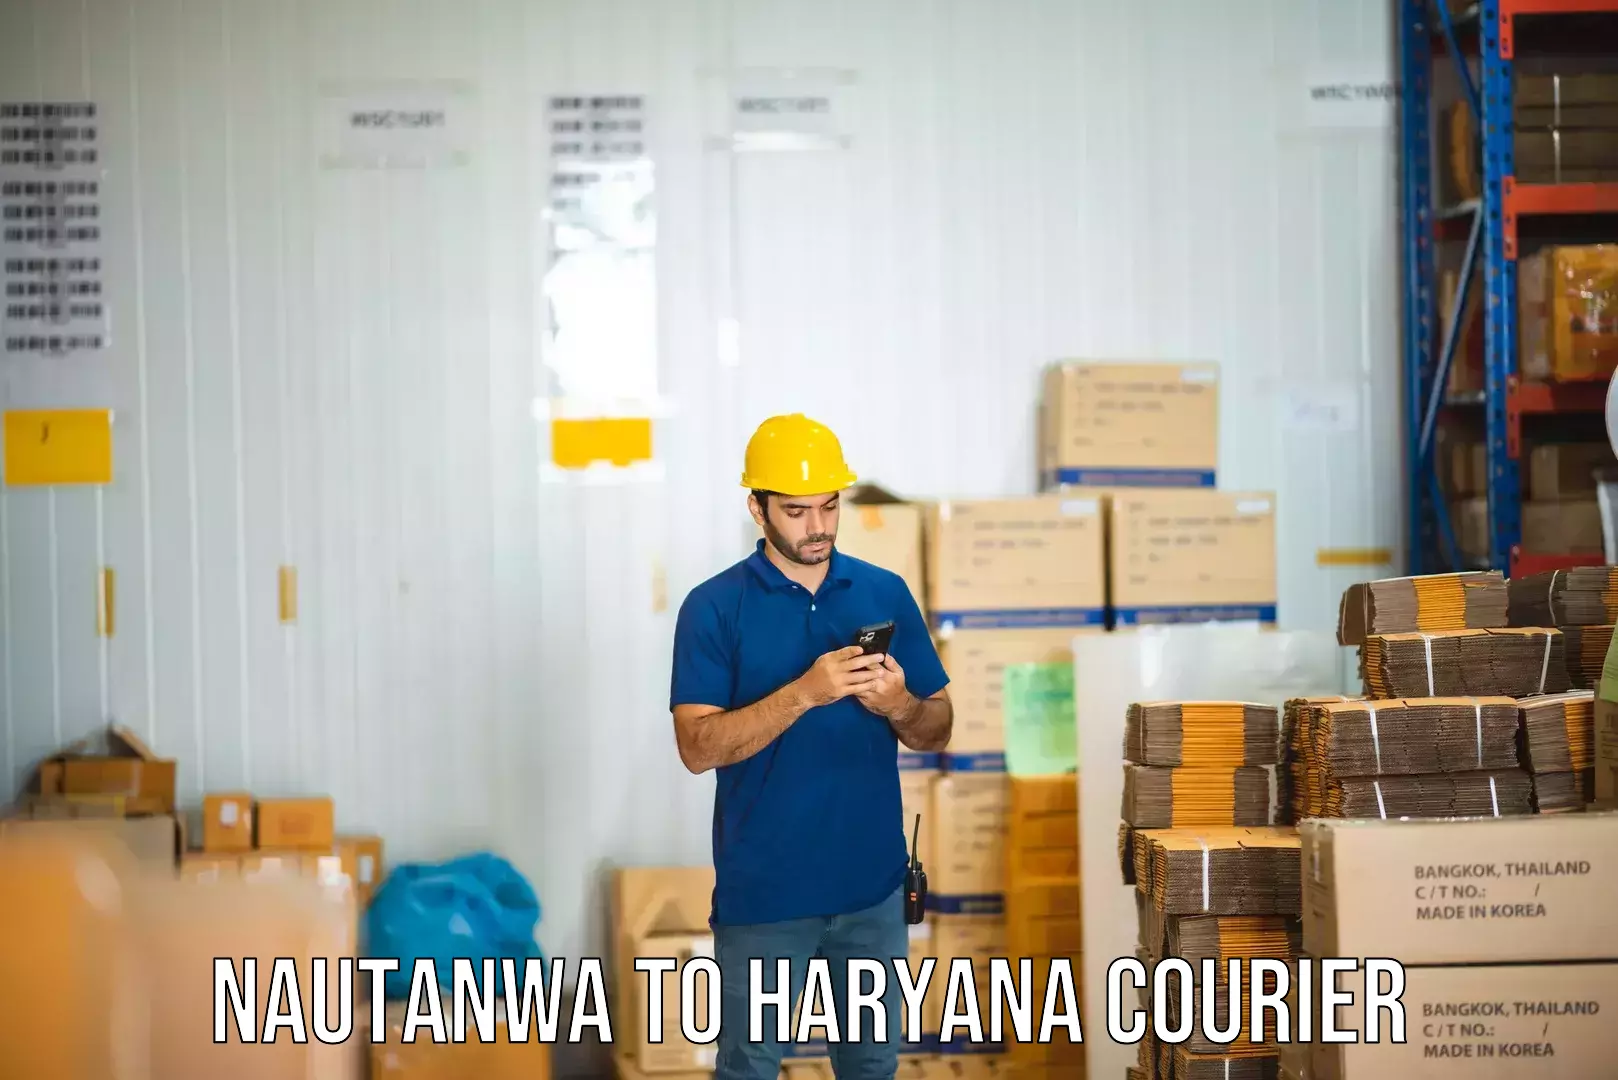 Cross-border shipping Nautanwa to Haryana